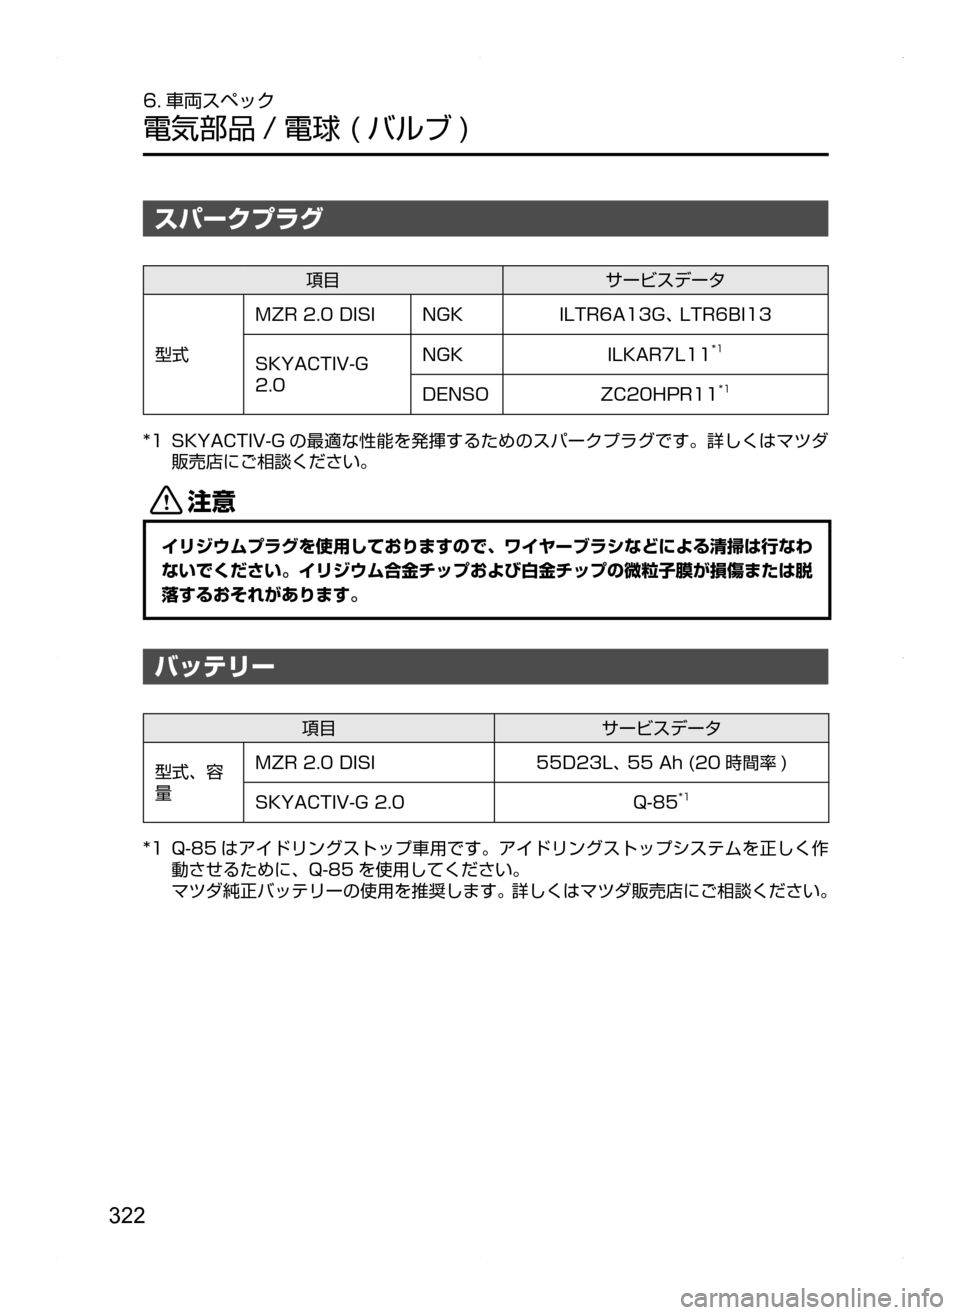 MAZDA MODEL BIANTE 2008  取扱説明書 (in Japanese) 322
6. 車両スペック
電気部品 / 電球( バルブ )
スパークプラグ
項目サービスデータ
型式
MZR2.0DISINGKILTR6A13G､LTR6BI13
SKYACTIV-G
2.0 NGK
ILKAR7L11
*1
DENSOZC20HPR11*1